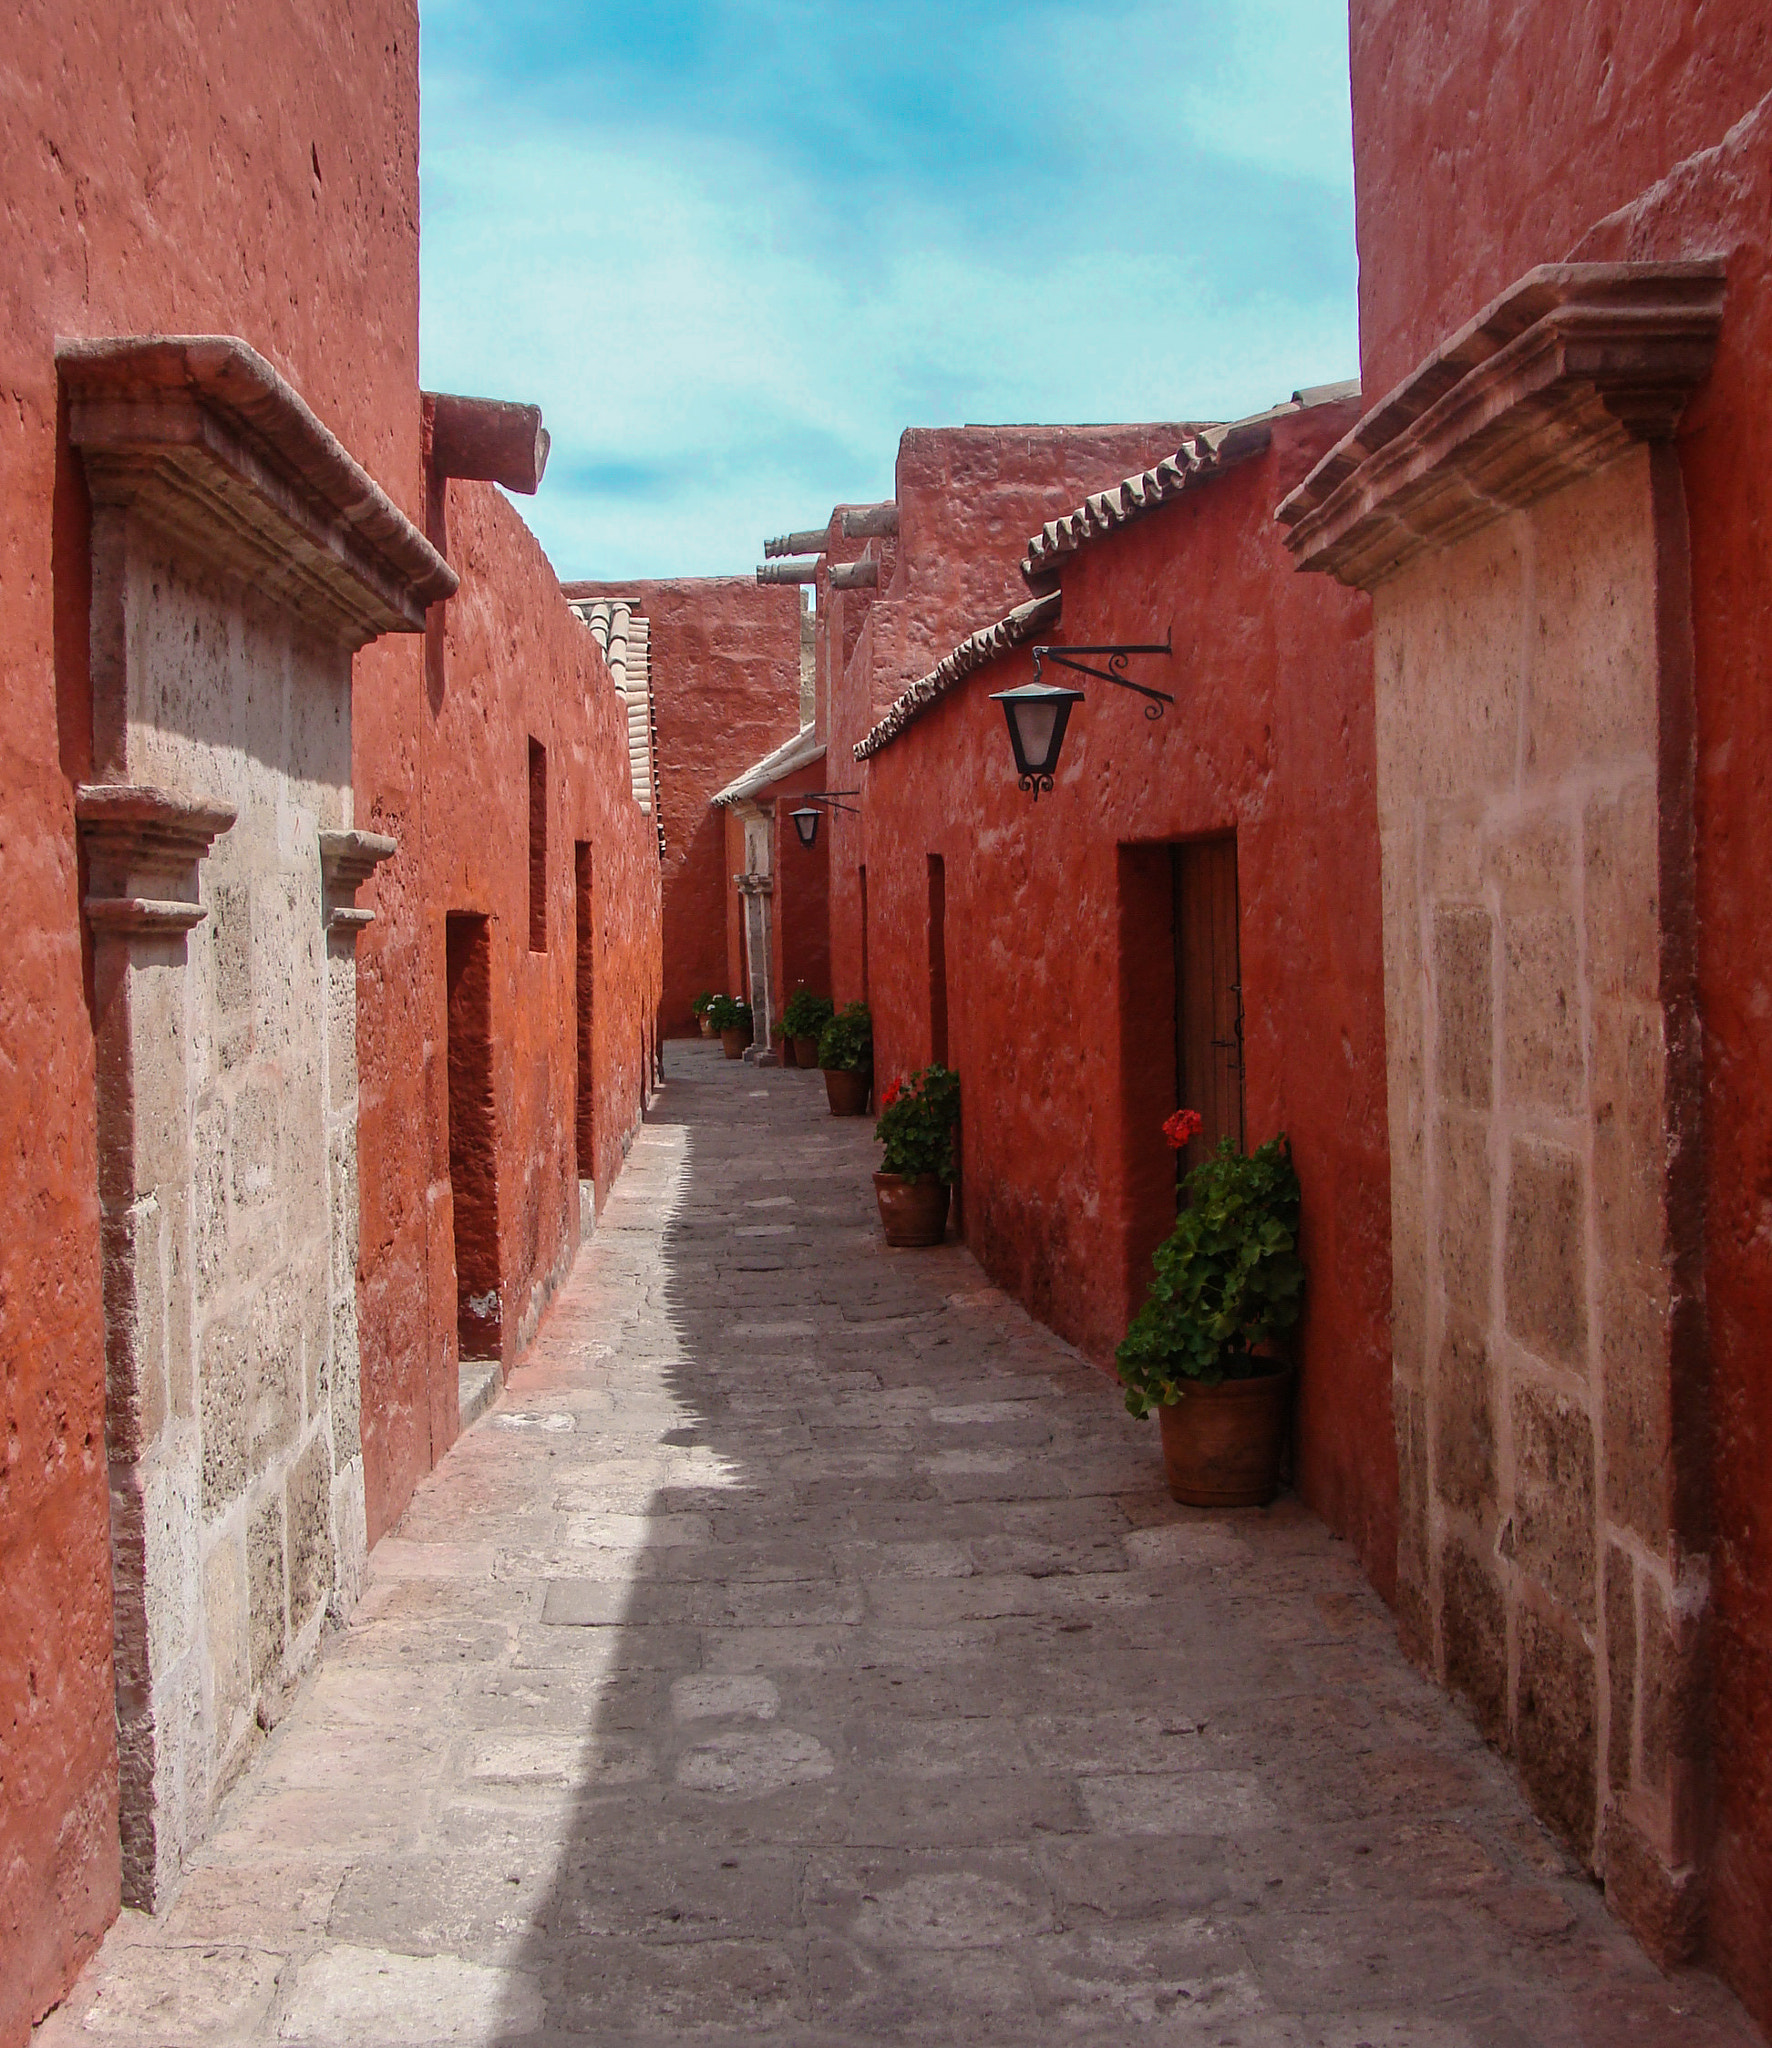 Sony DSC-H3 sample photo. Arequipa, monasterio de santa catalina photography